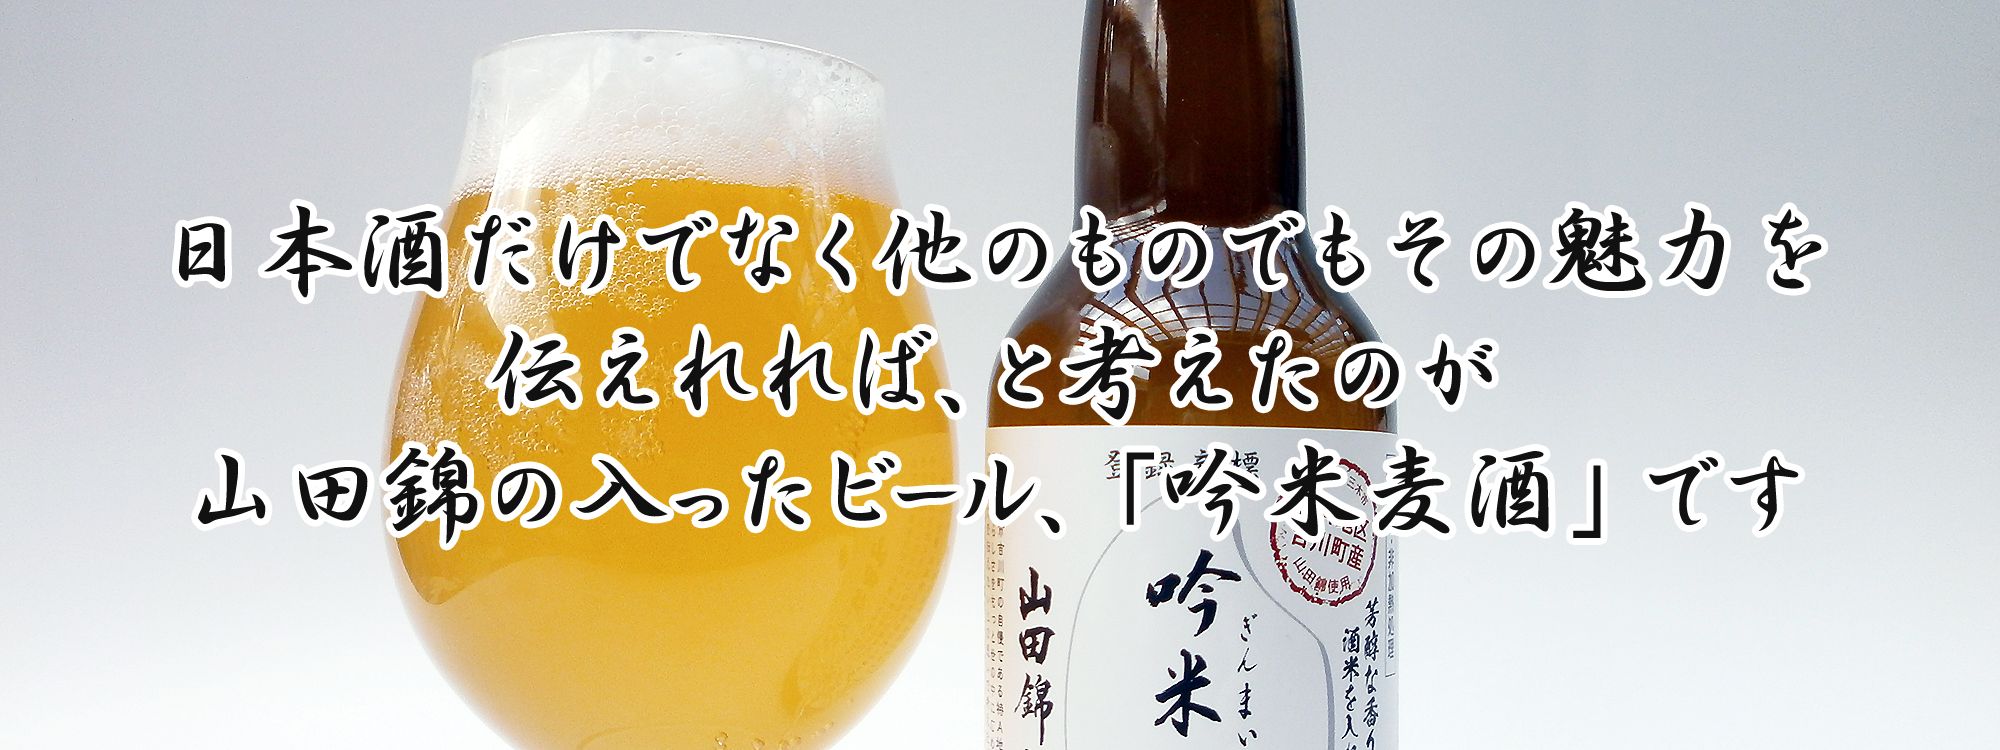 日本酒だけでなく他のものでもその魅力を伝えれれば、と考えたのが山田錦の入ったビール、「吟米麦酒」です